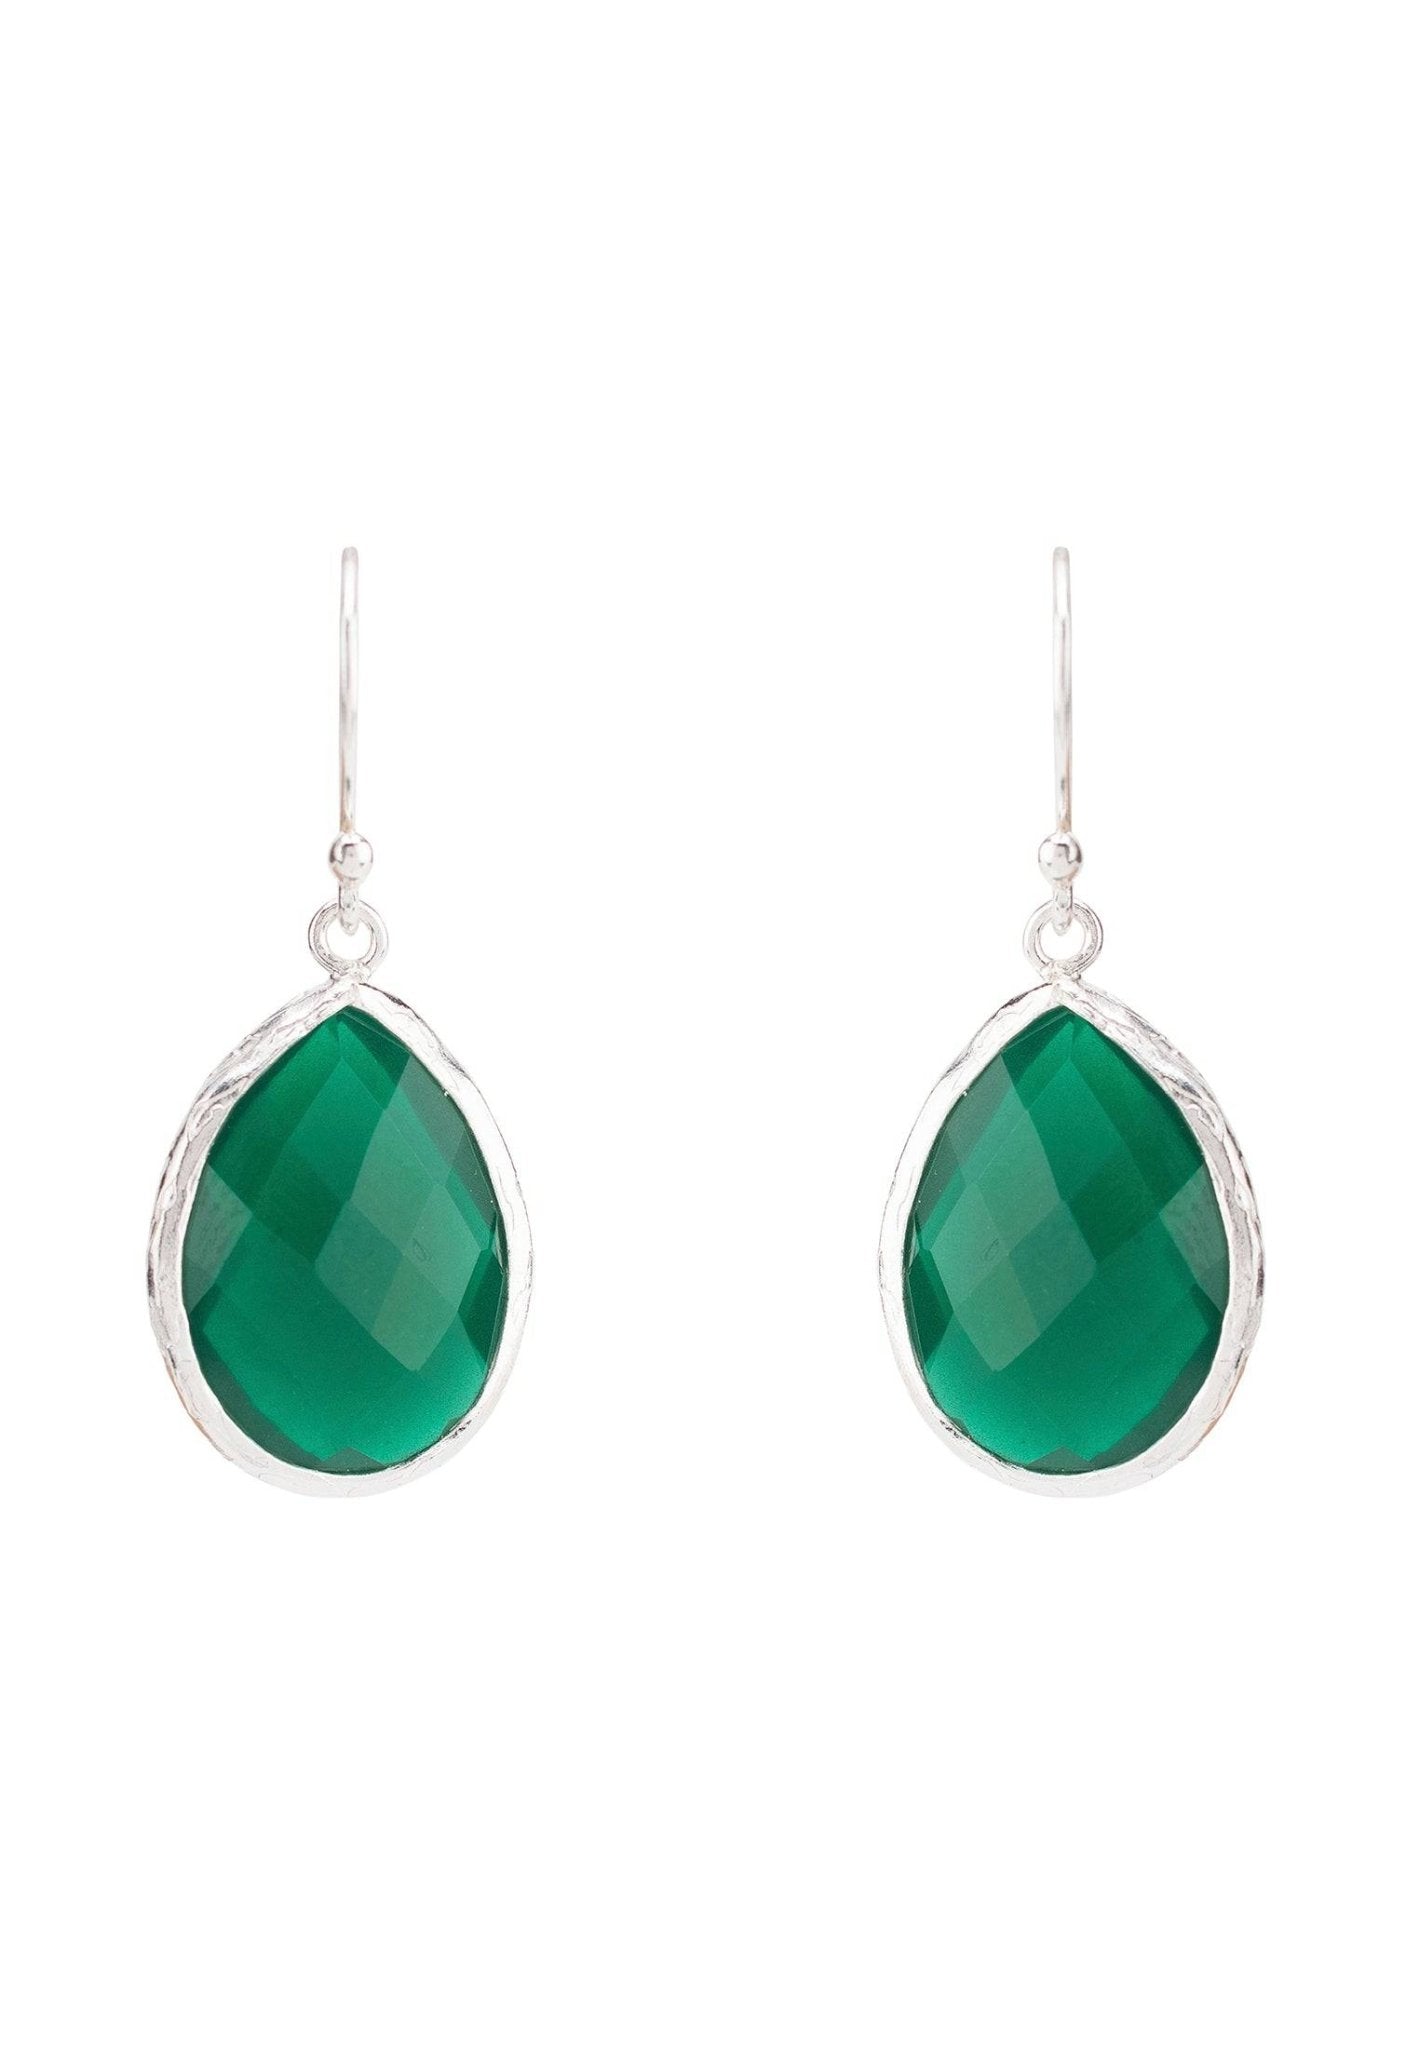 Petite Drop Earrings Silver Green Onyx - LATELITA Earrings